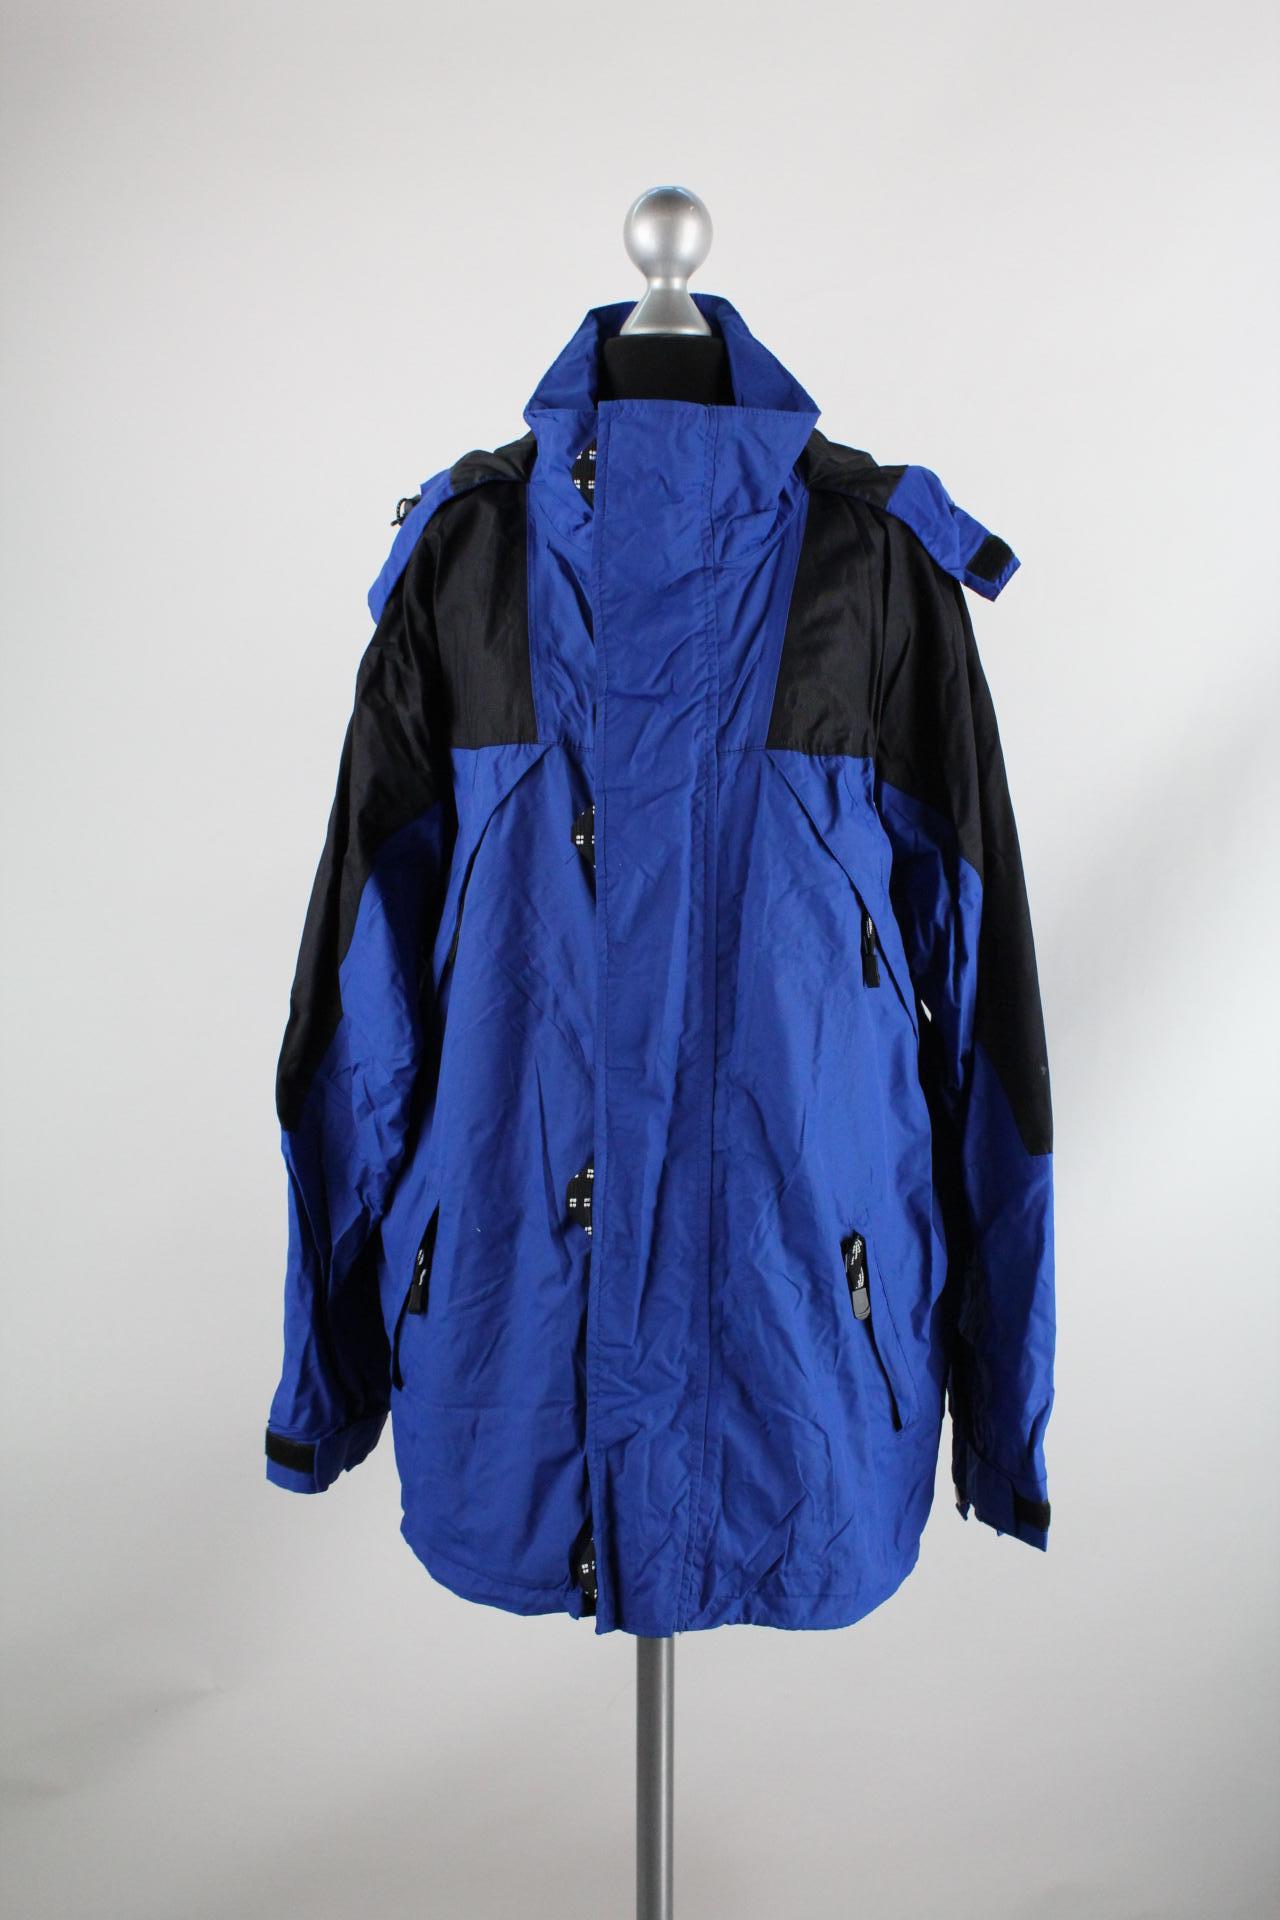 Excel Sports Fashion Herren-Jacke blau/schwarz Größe S